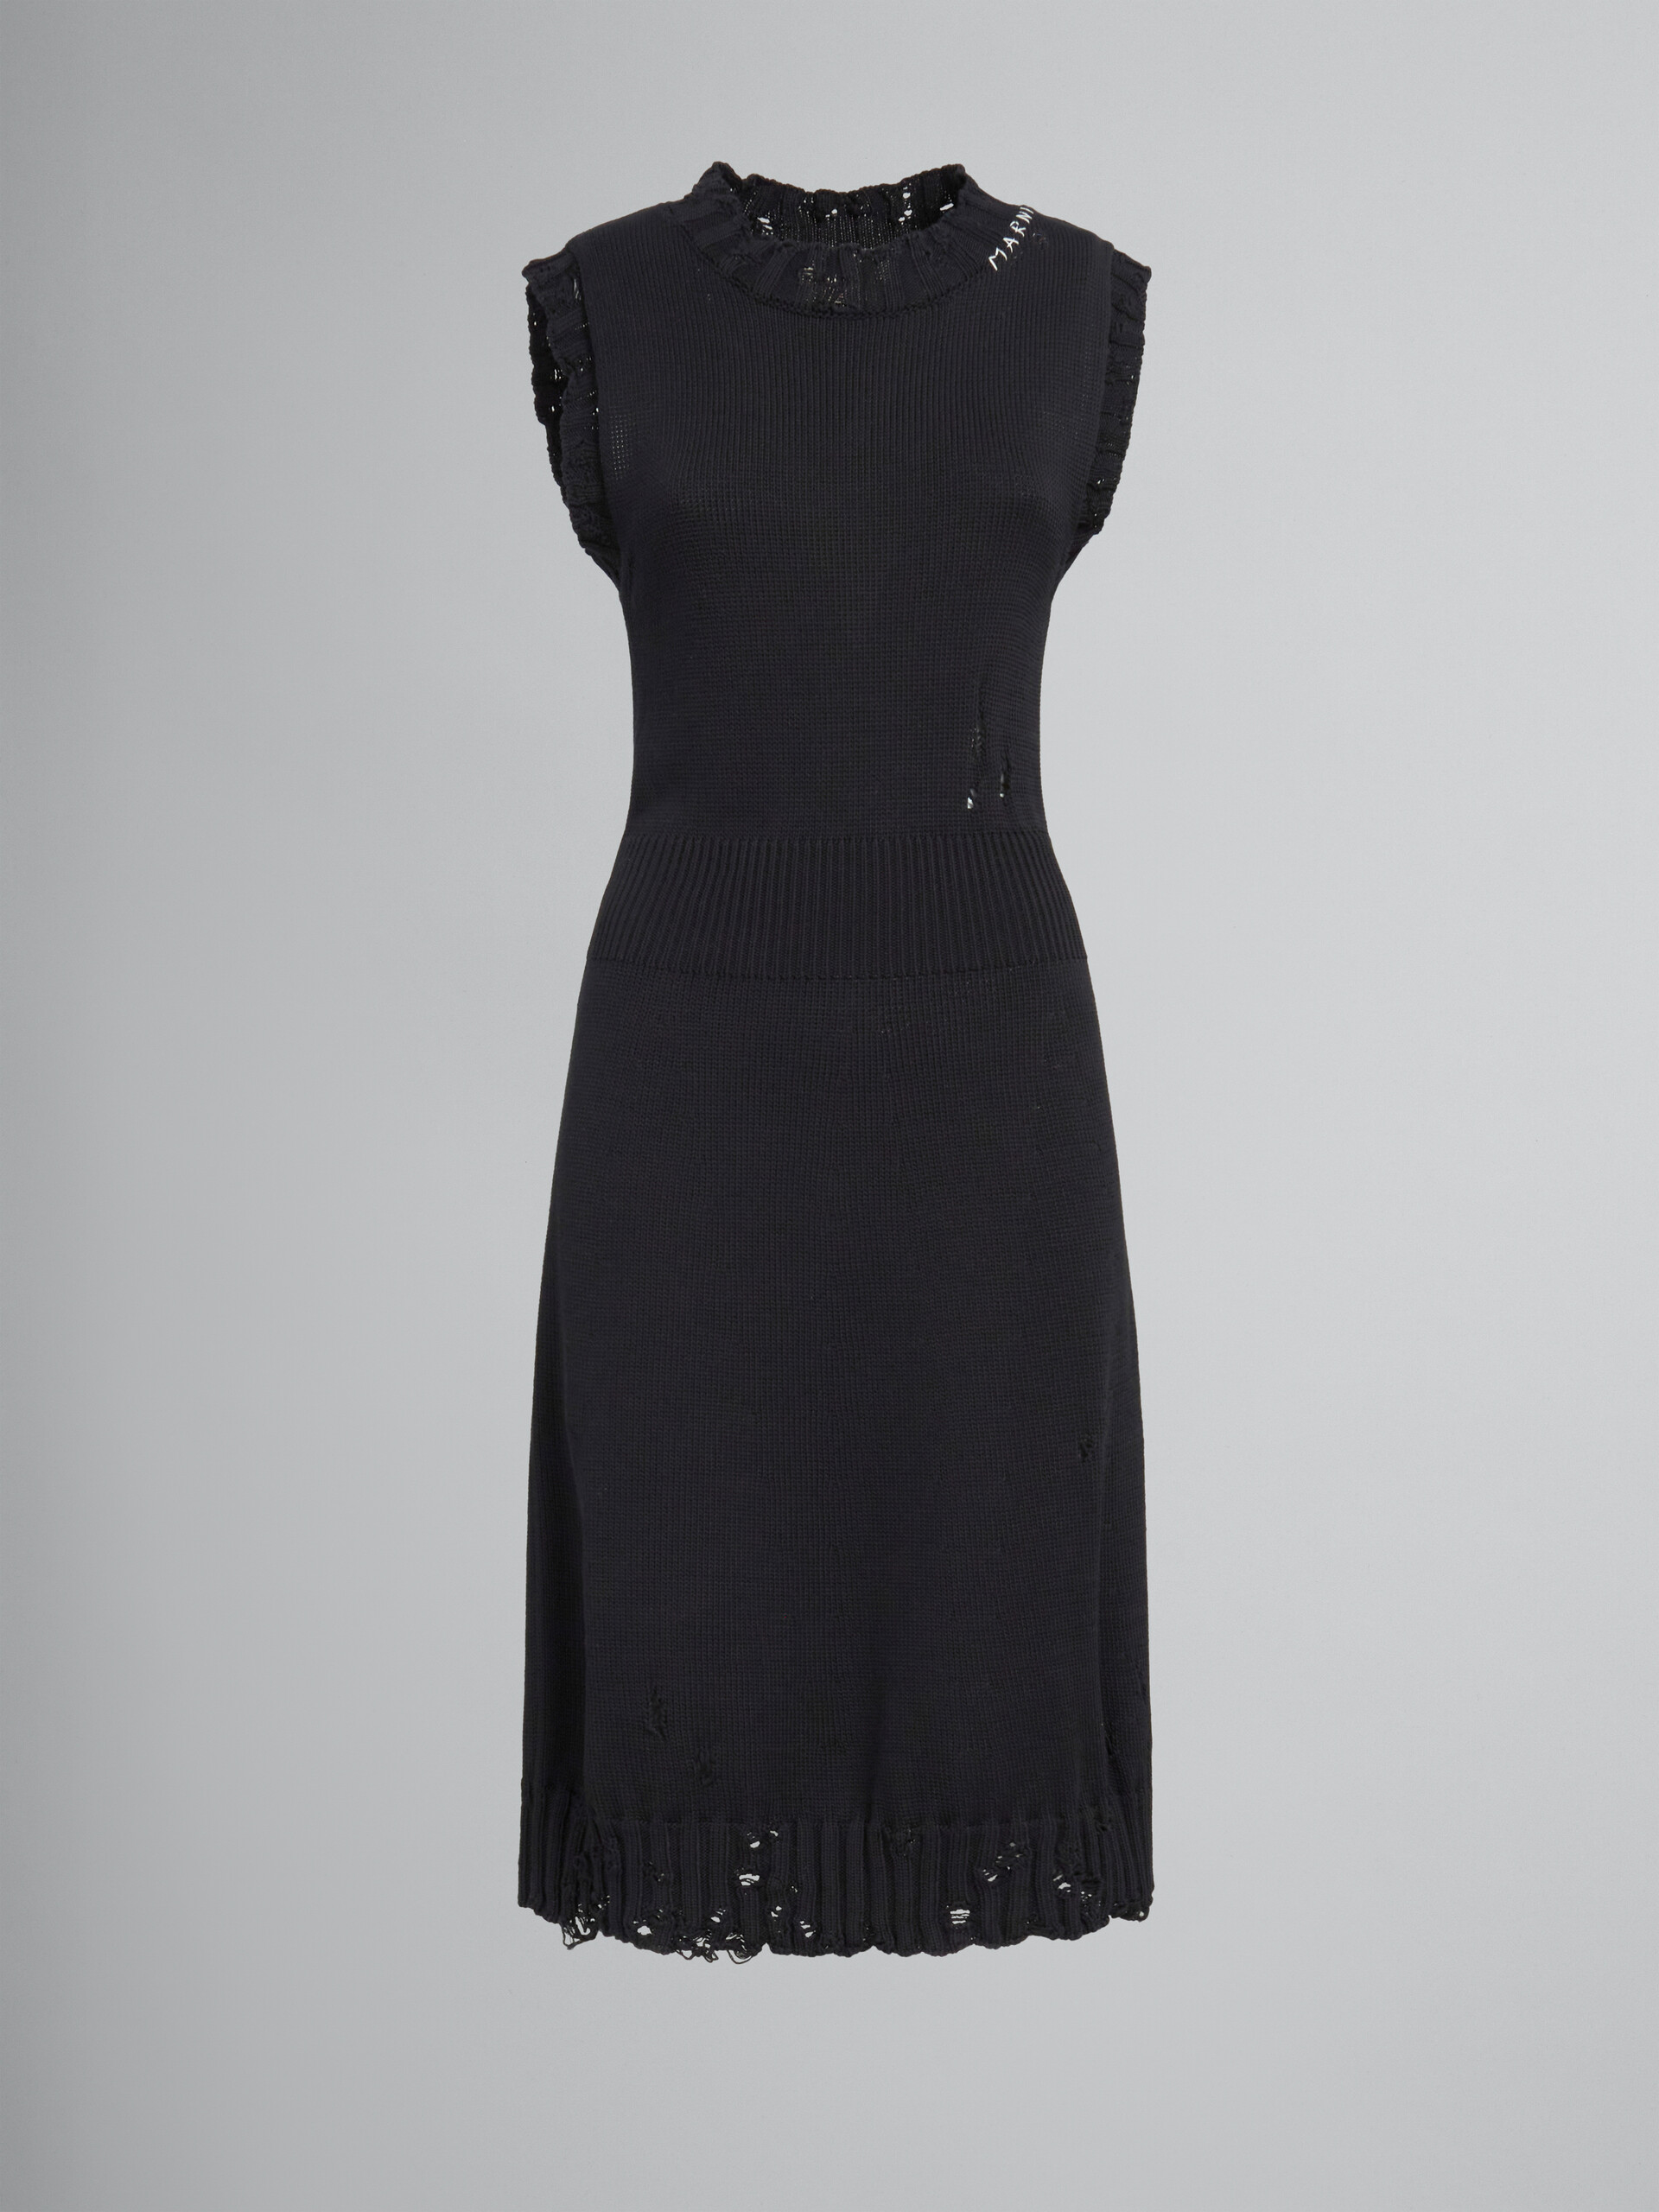 ブラック ディシュベルドコットン製ニットドレス - ドレス - Image 1